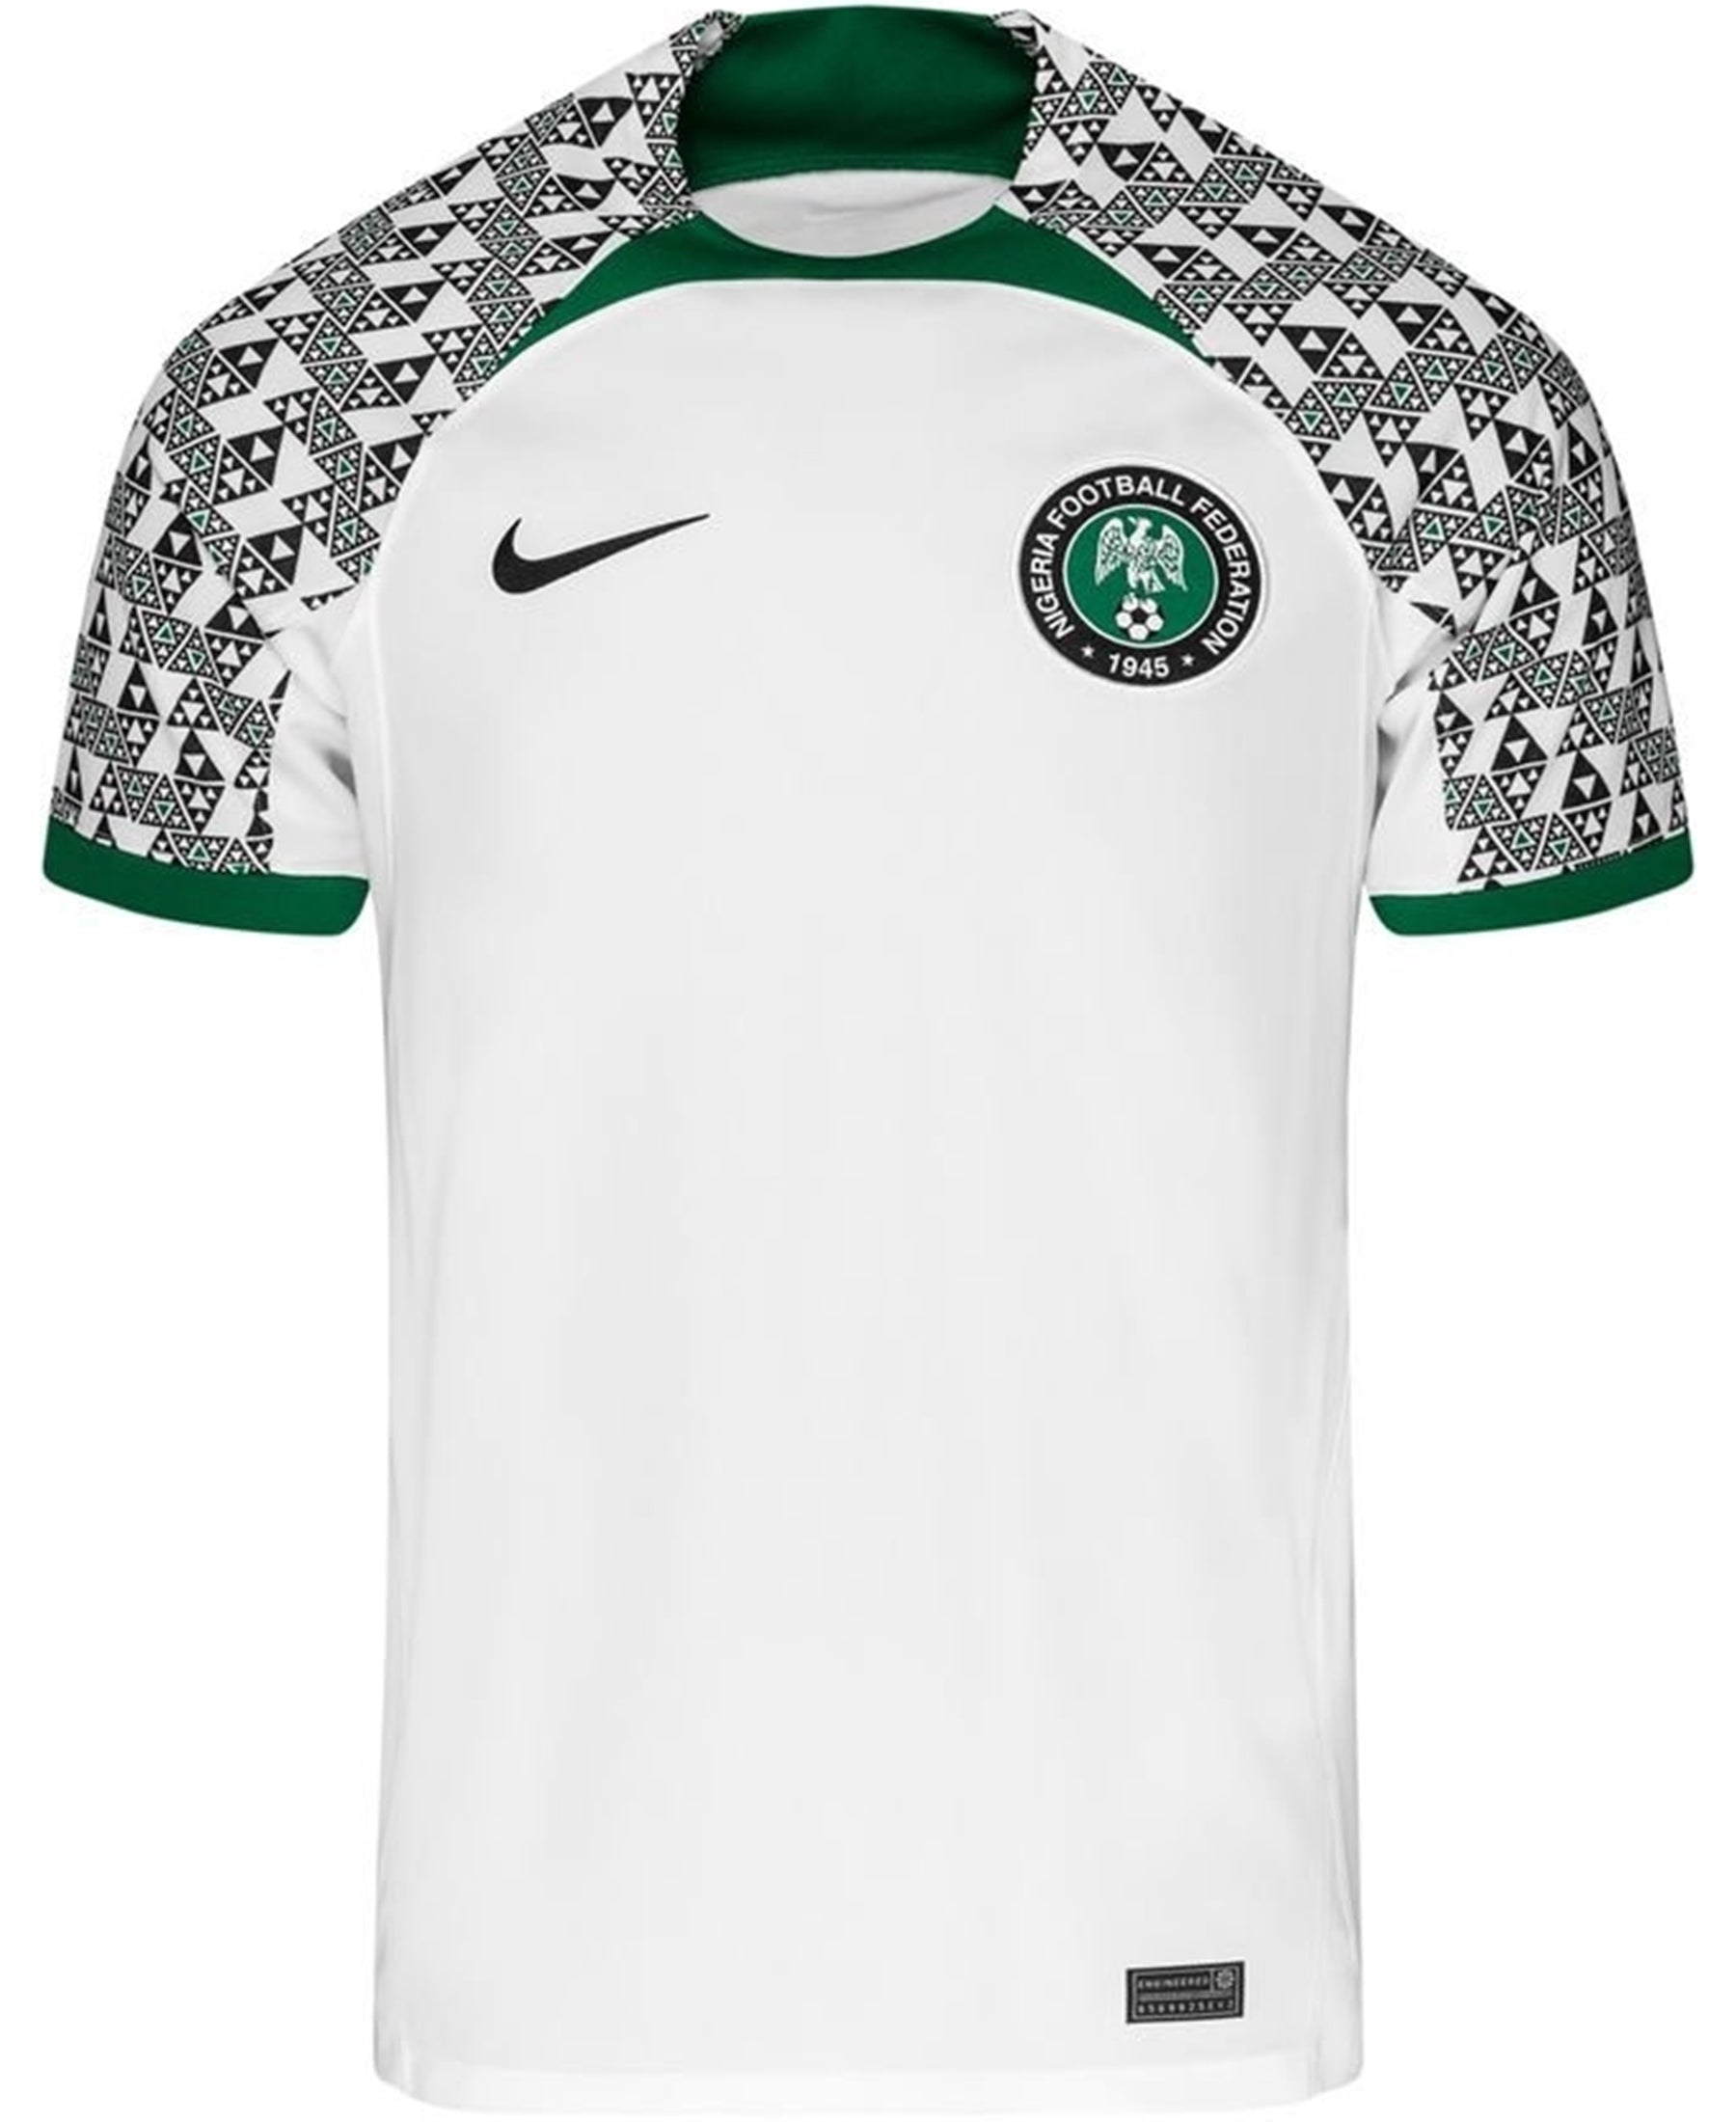 Das Nike Nigeria NFF Stadium Auswärtstrikot 2022-2023 (Artikelnummer: DN0695-100) ist ein beeindruckendes Trikot mit einem einzigartigen Design. Mit seinen hochwertigen Materialien und der offiziellen Lizenzierung ist es perfekt für Fans der nigerianischen Nationalmannschaft. Zeigen Sie Ihre Unterstützung und bestellen Sie dieses Trikot jetzt bei SHOP4TEAMSPORT. Seien Sie bereit, Ihr Team stolz zu repräsentieren!